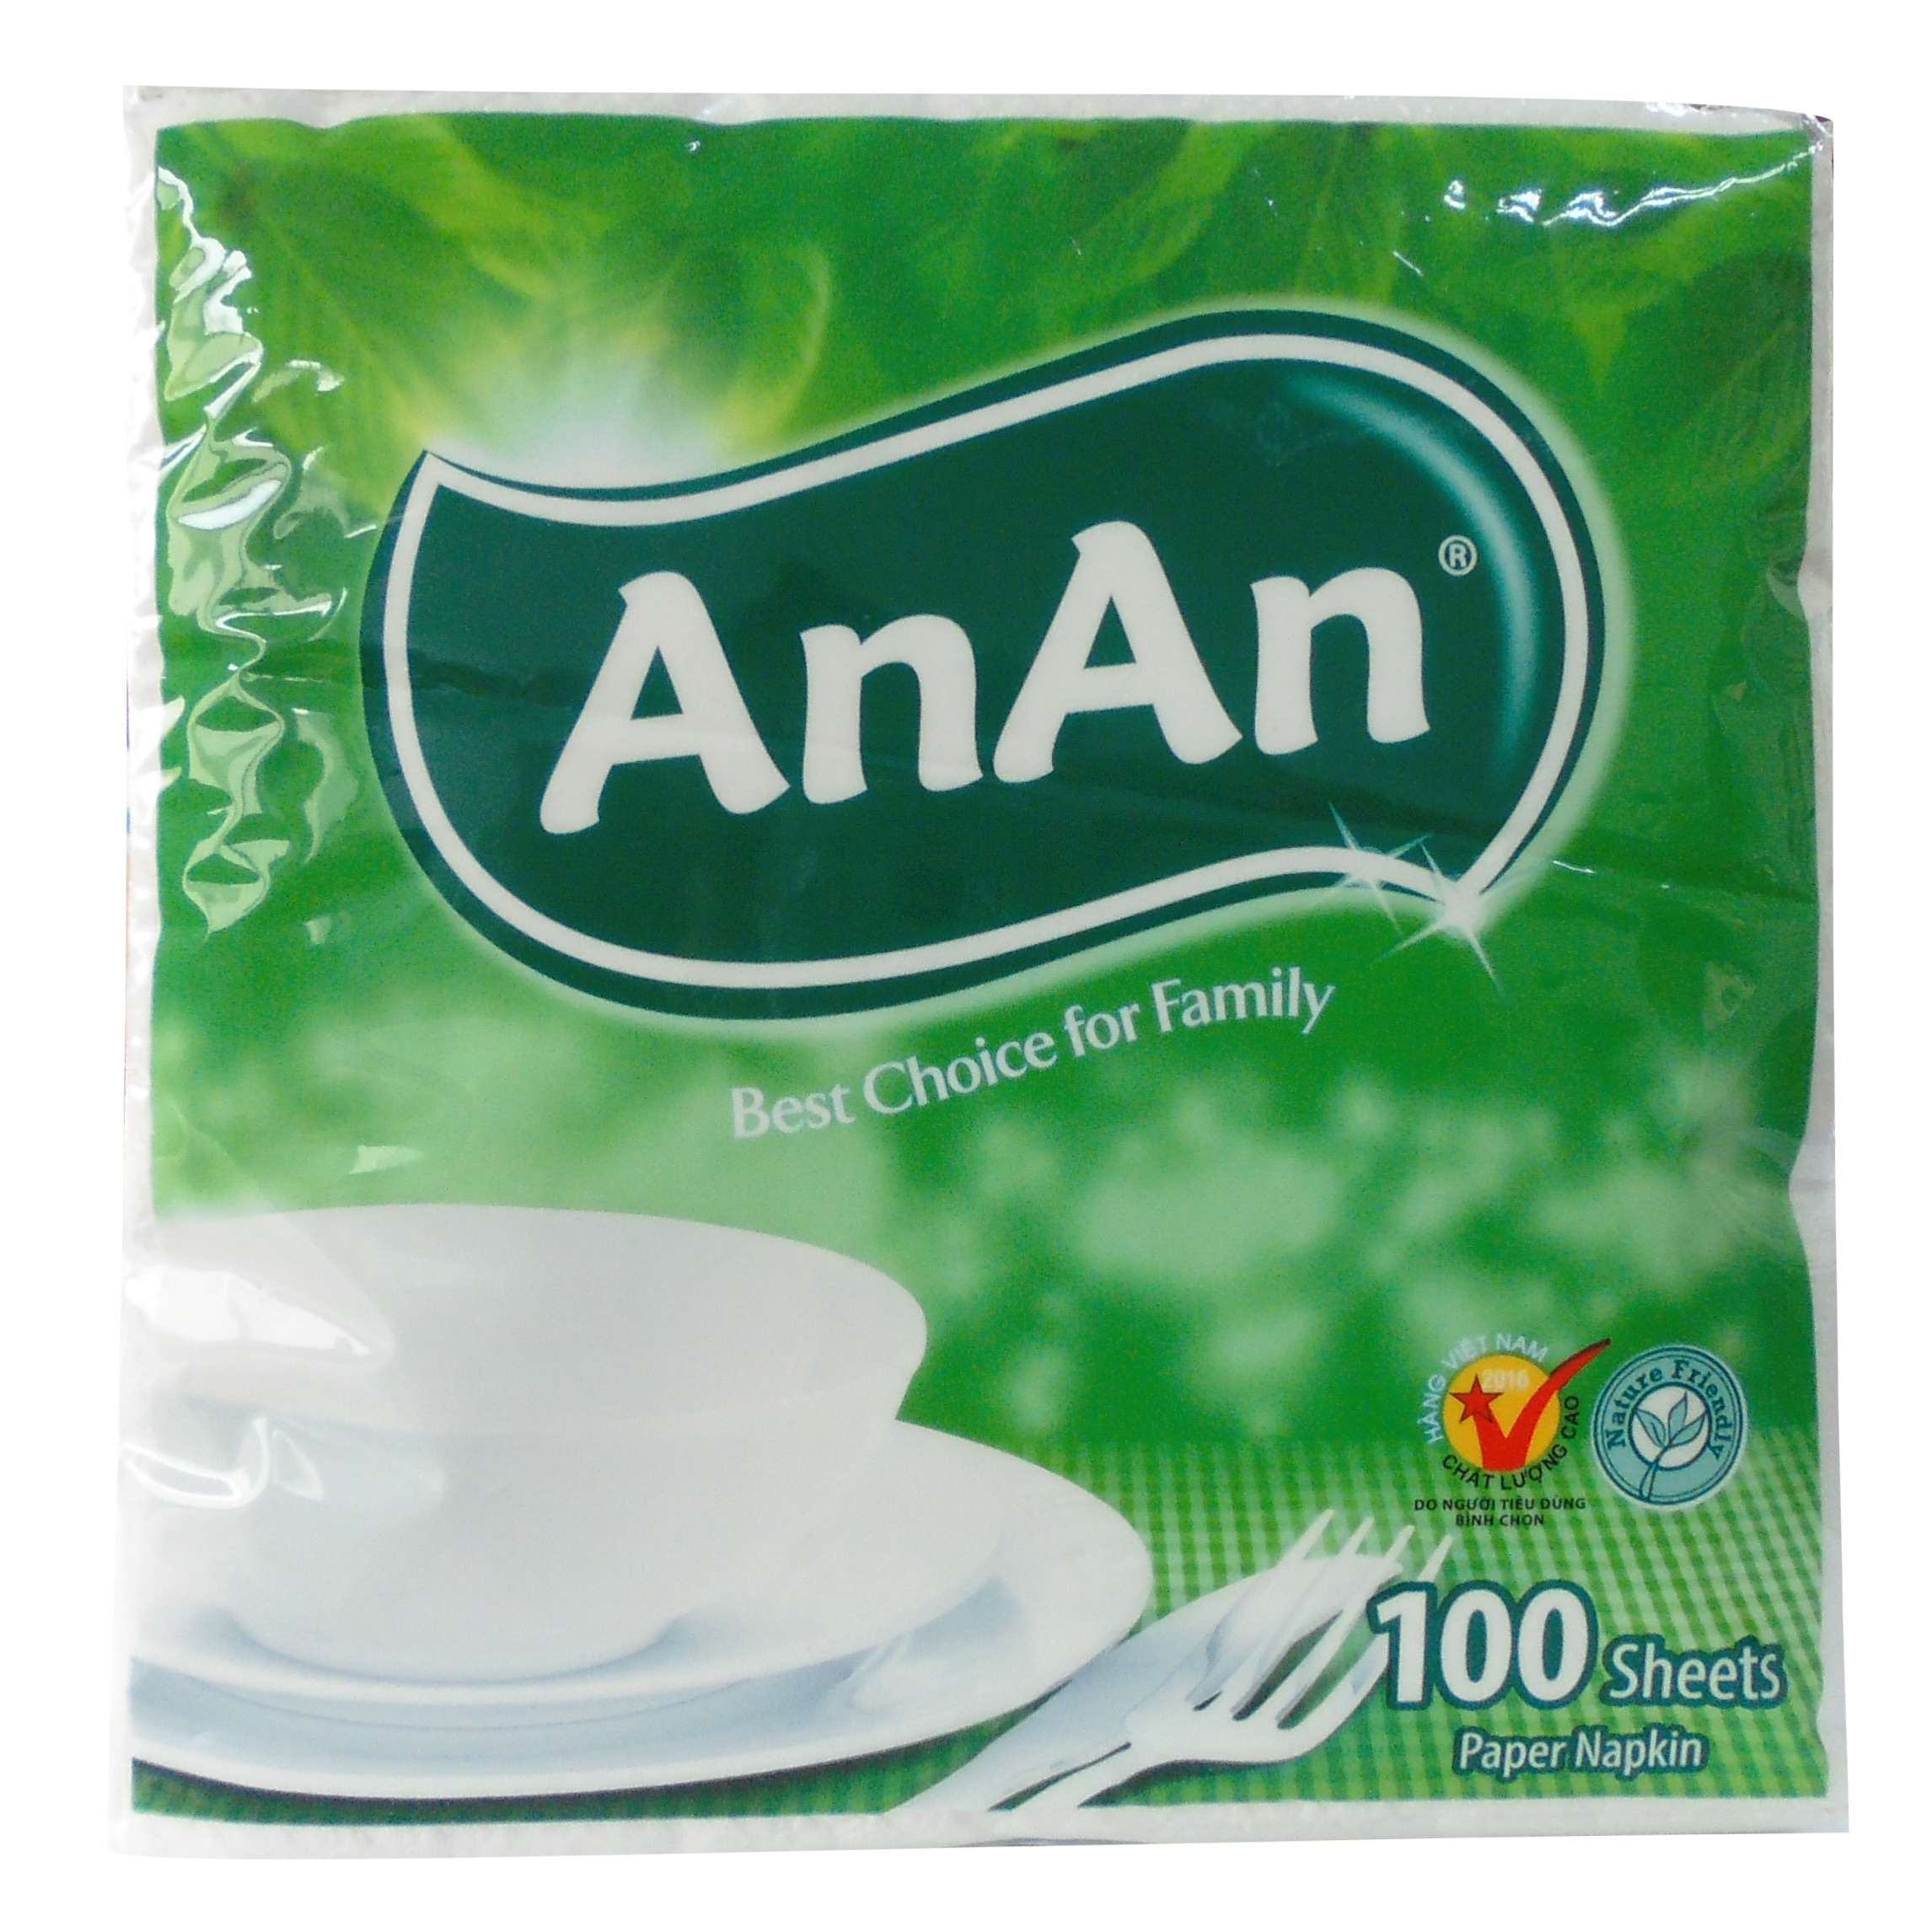 AnAn Napkin Tissue